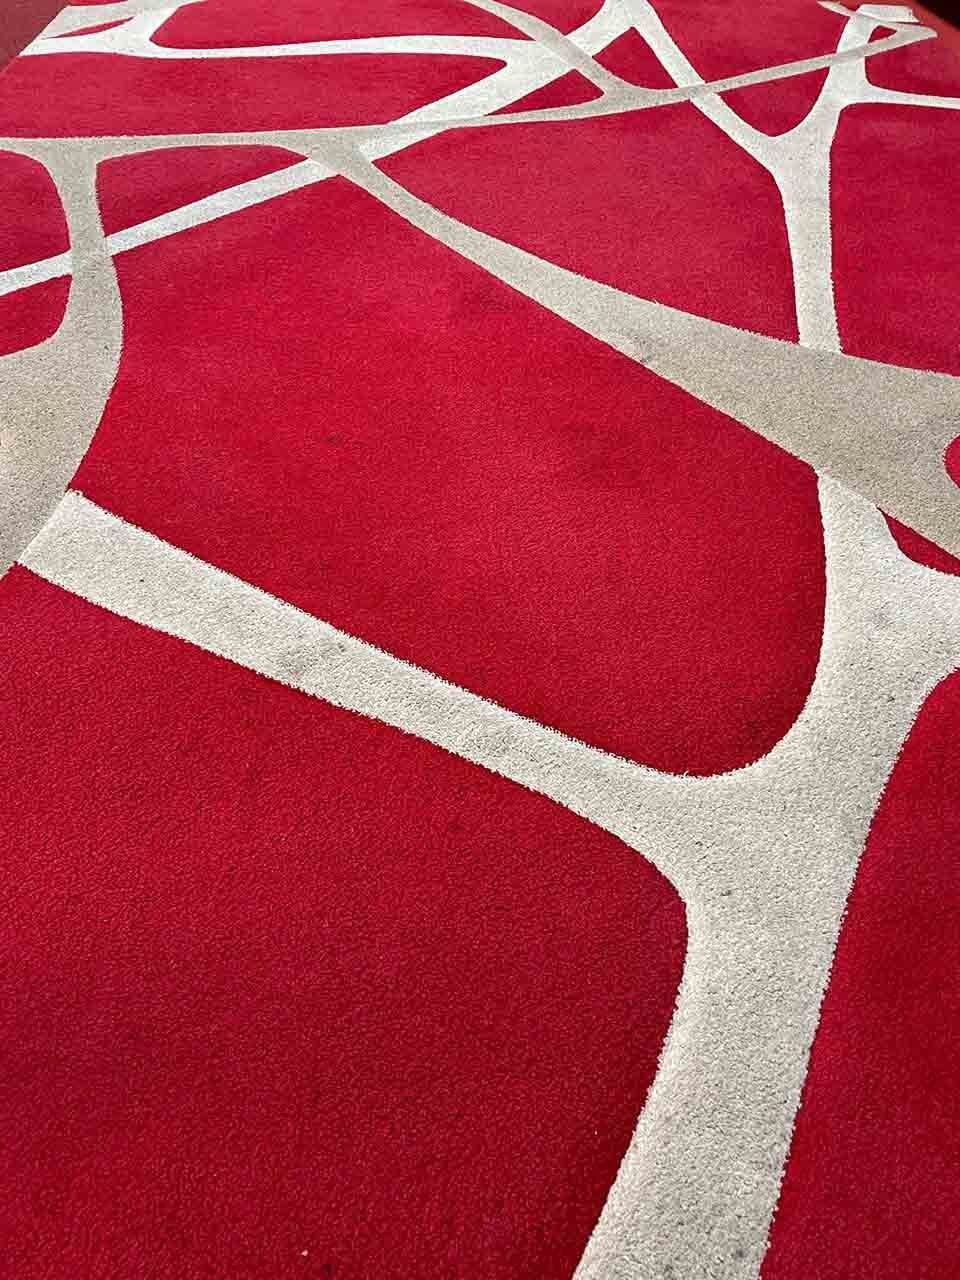 Lavaggio tappeto rosso prima